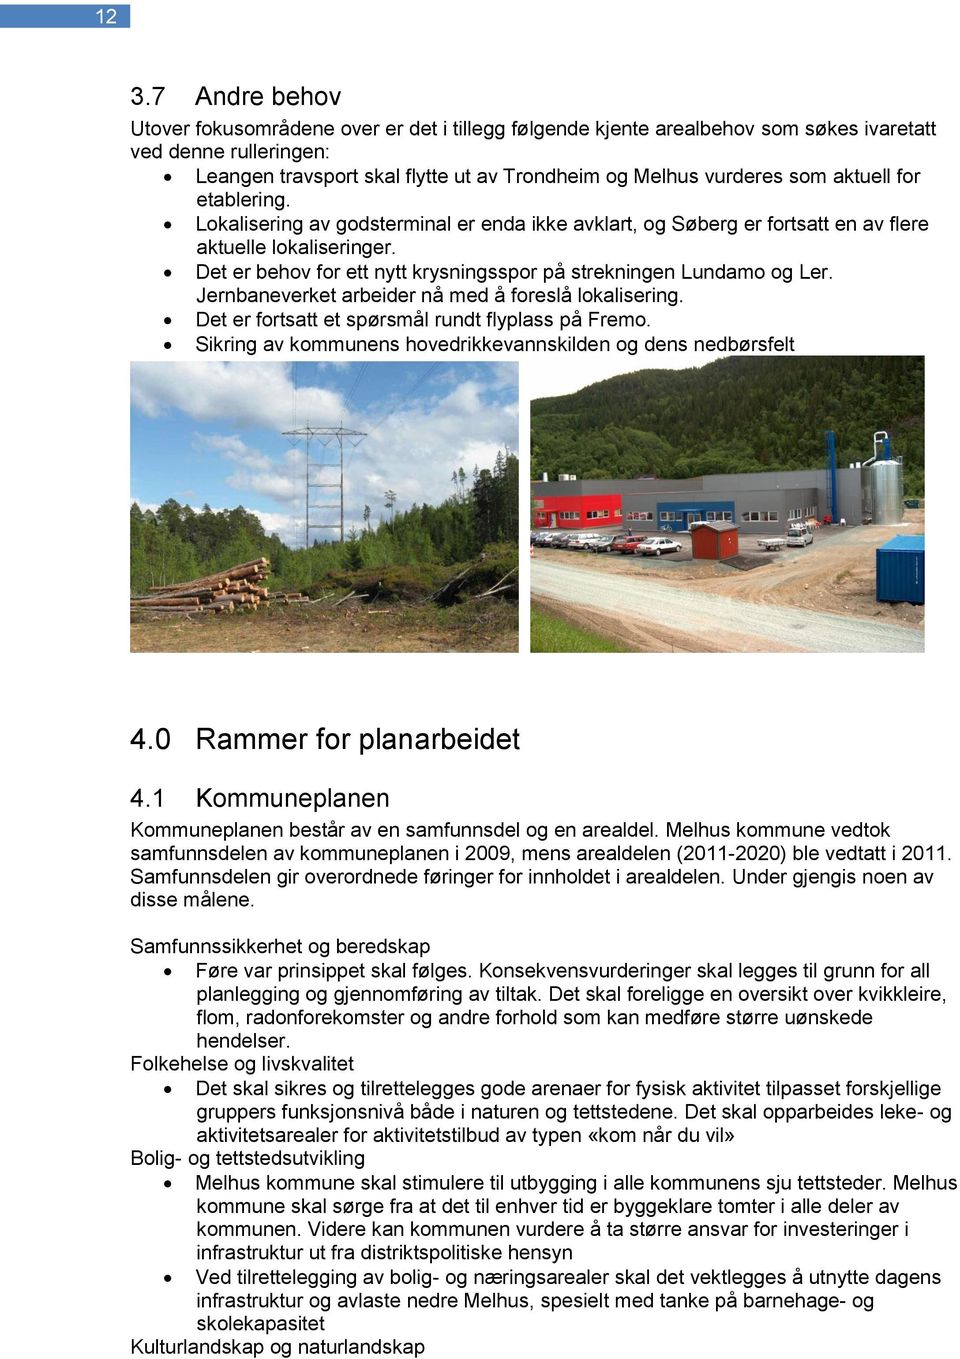 Det er behov for ett nytt krysningsspor på strekningen Lundamo og Ler. Jernbaneverket arbeider nå med å foreslå lokalisering. Det er fortsatt et spørsmål rundt flyplass på Fremo.